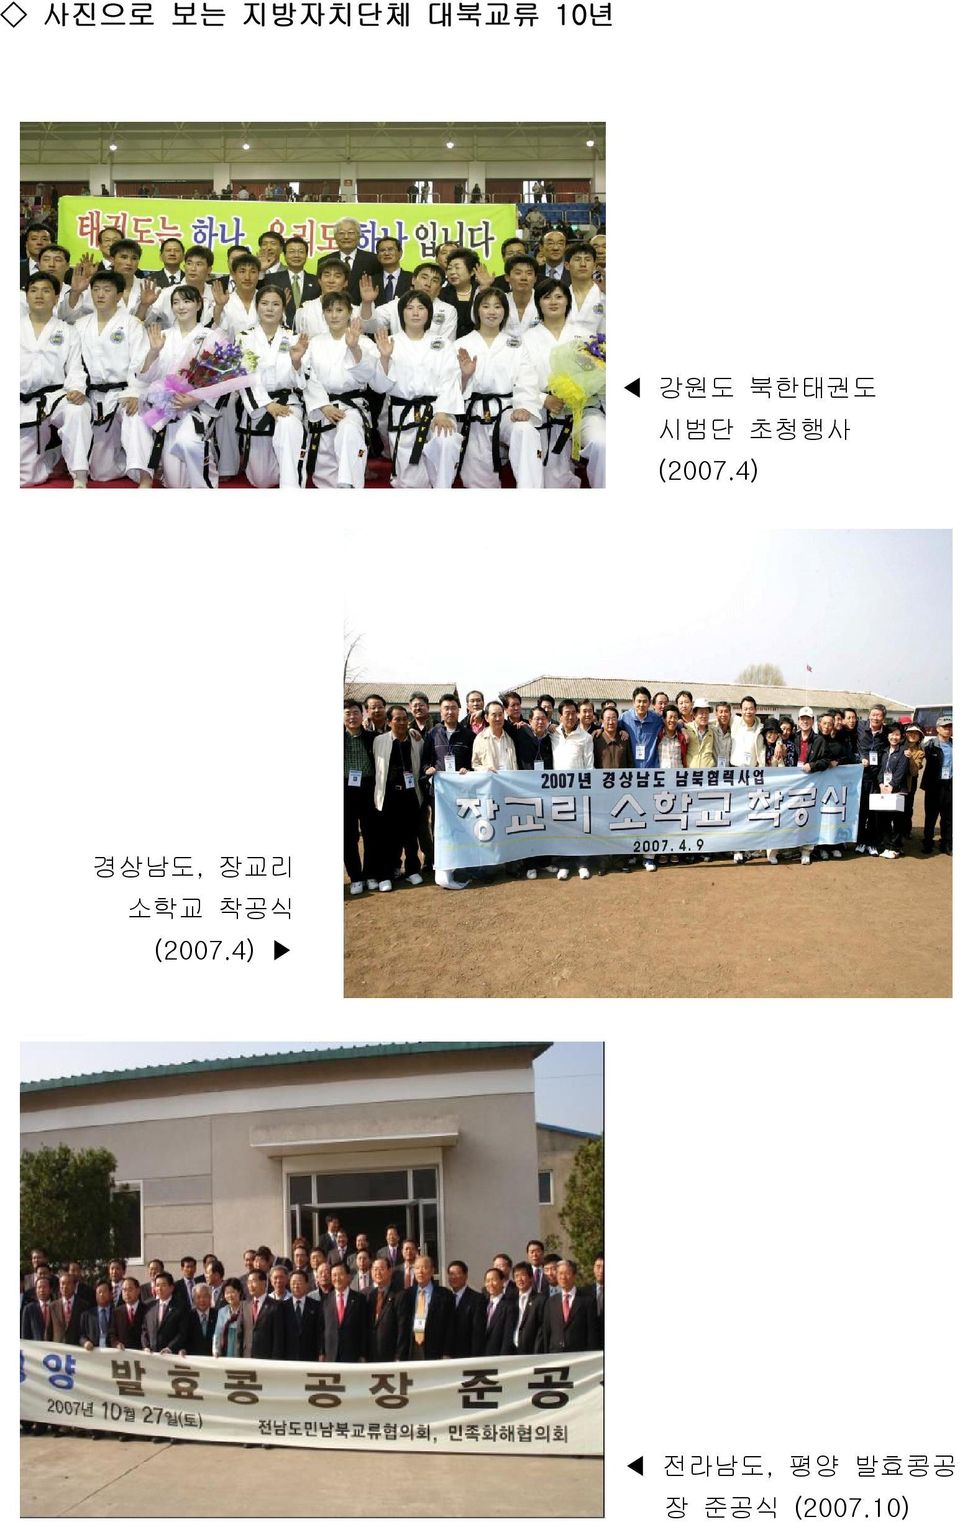 4) 경상남도, 장교리 소학교 착공식 (2007.